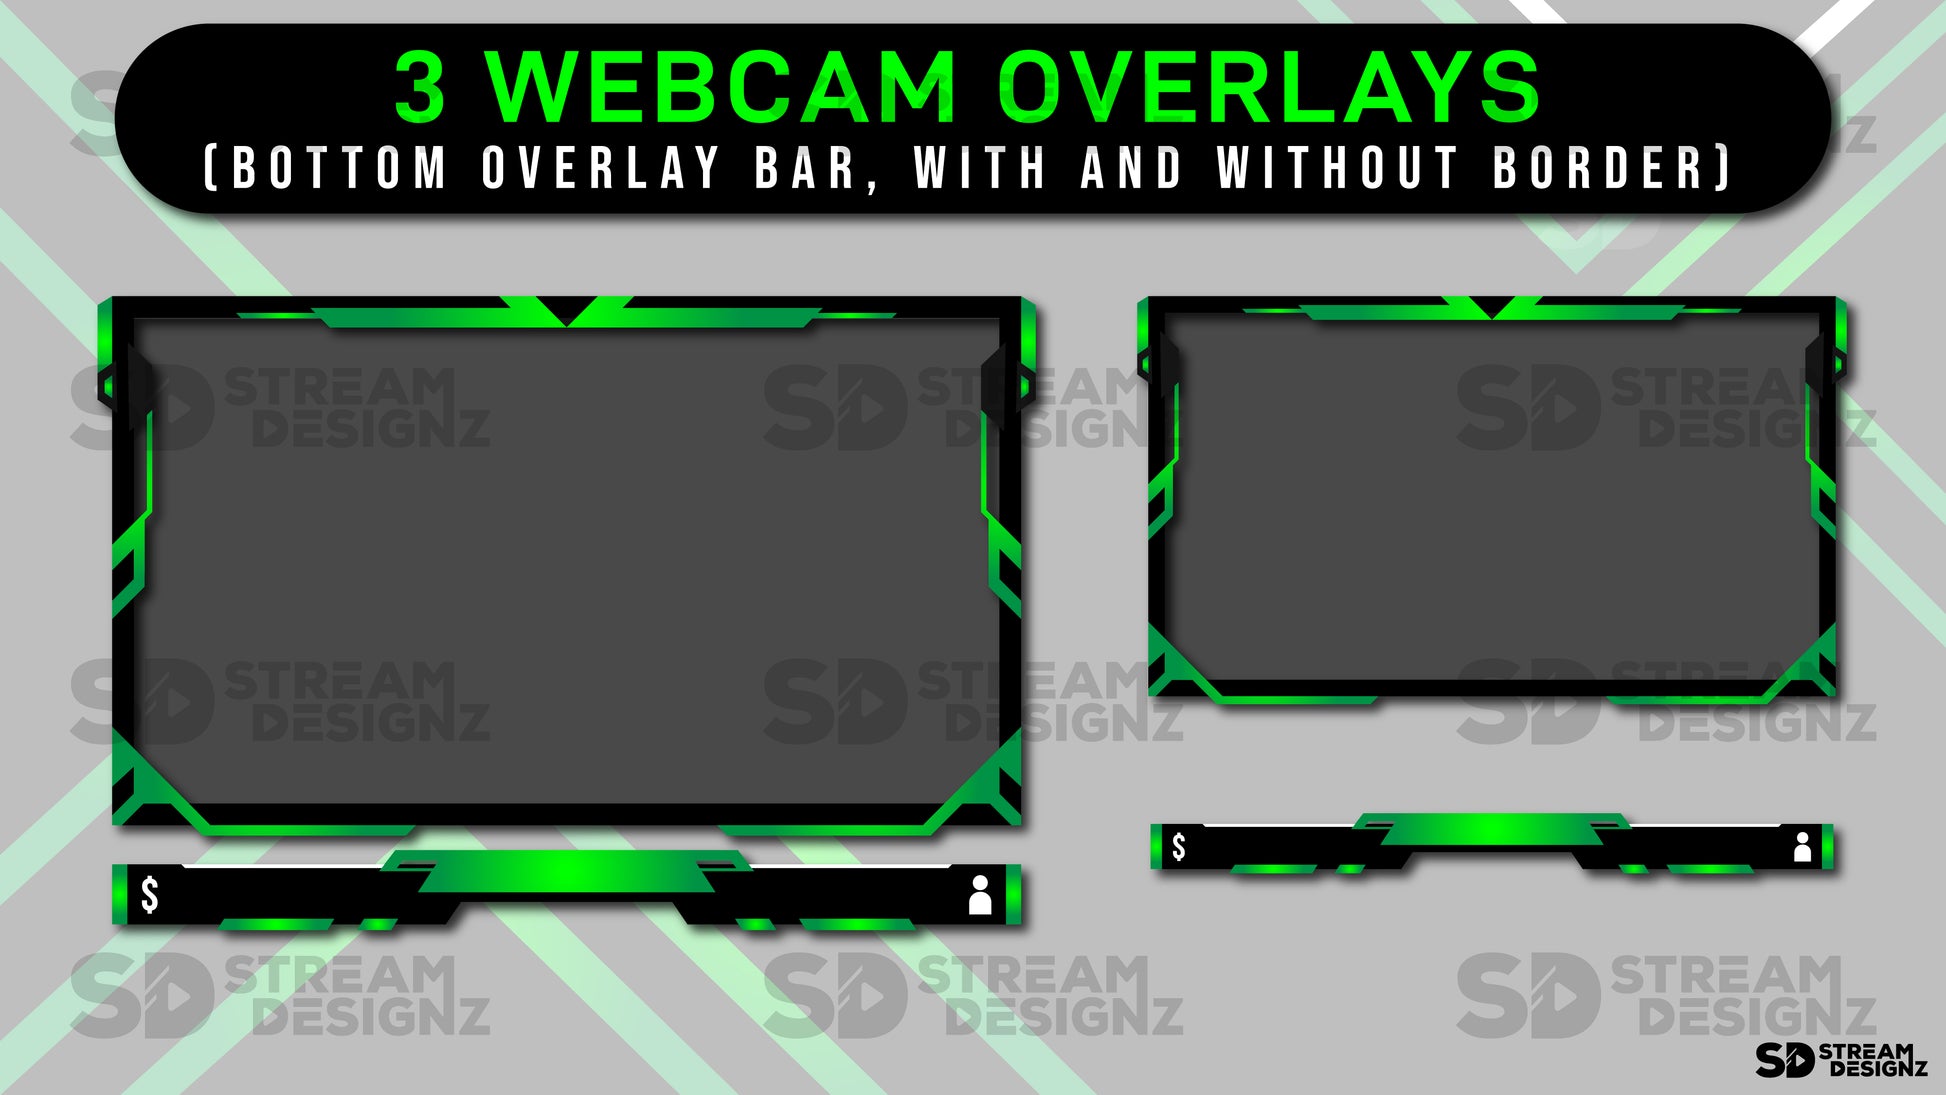 green lantern webcam overlays preview image stream designz